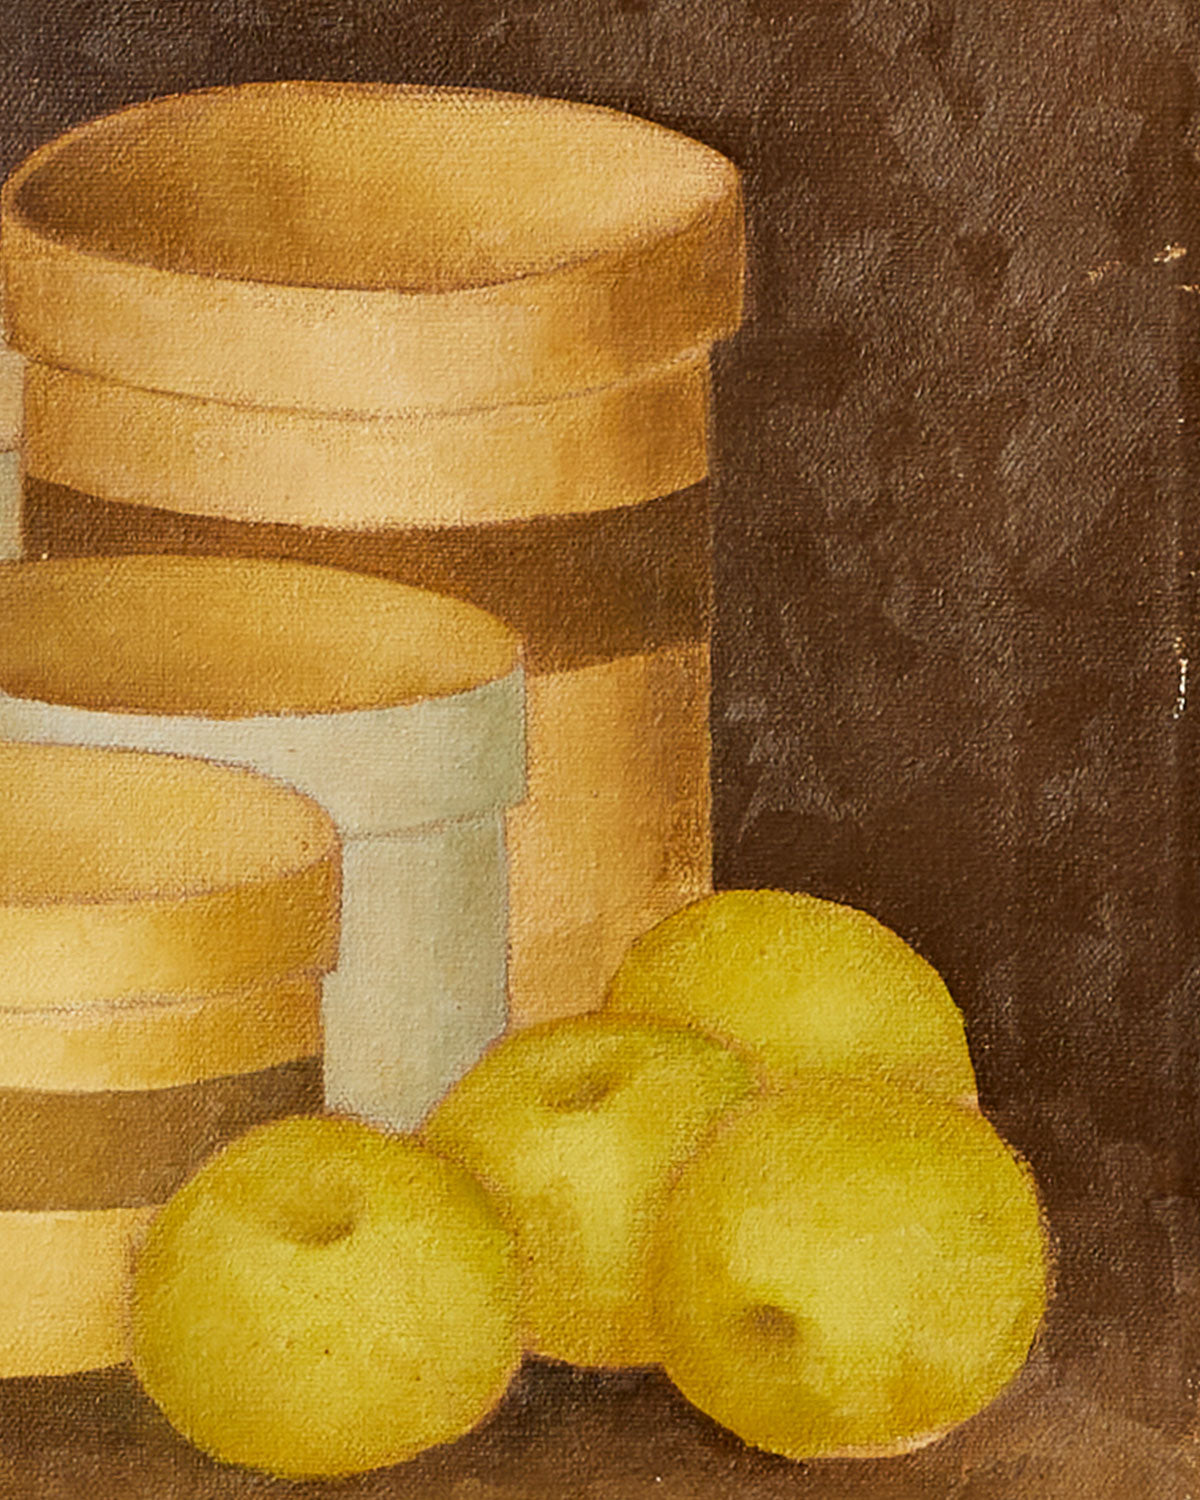 Apples and Jars Still Life